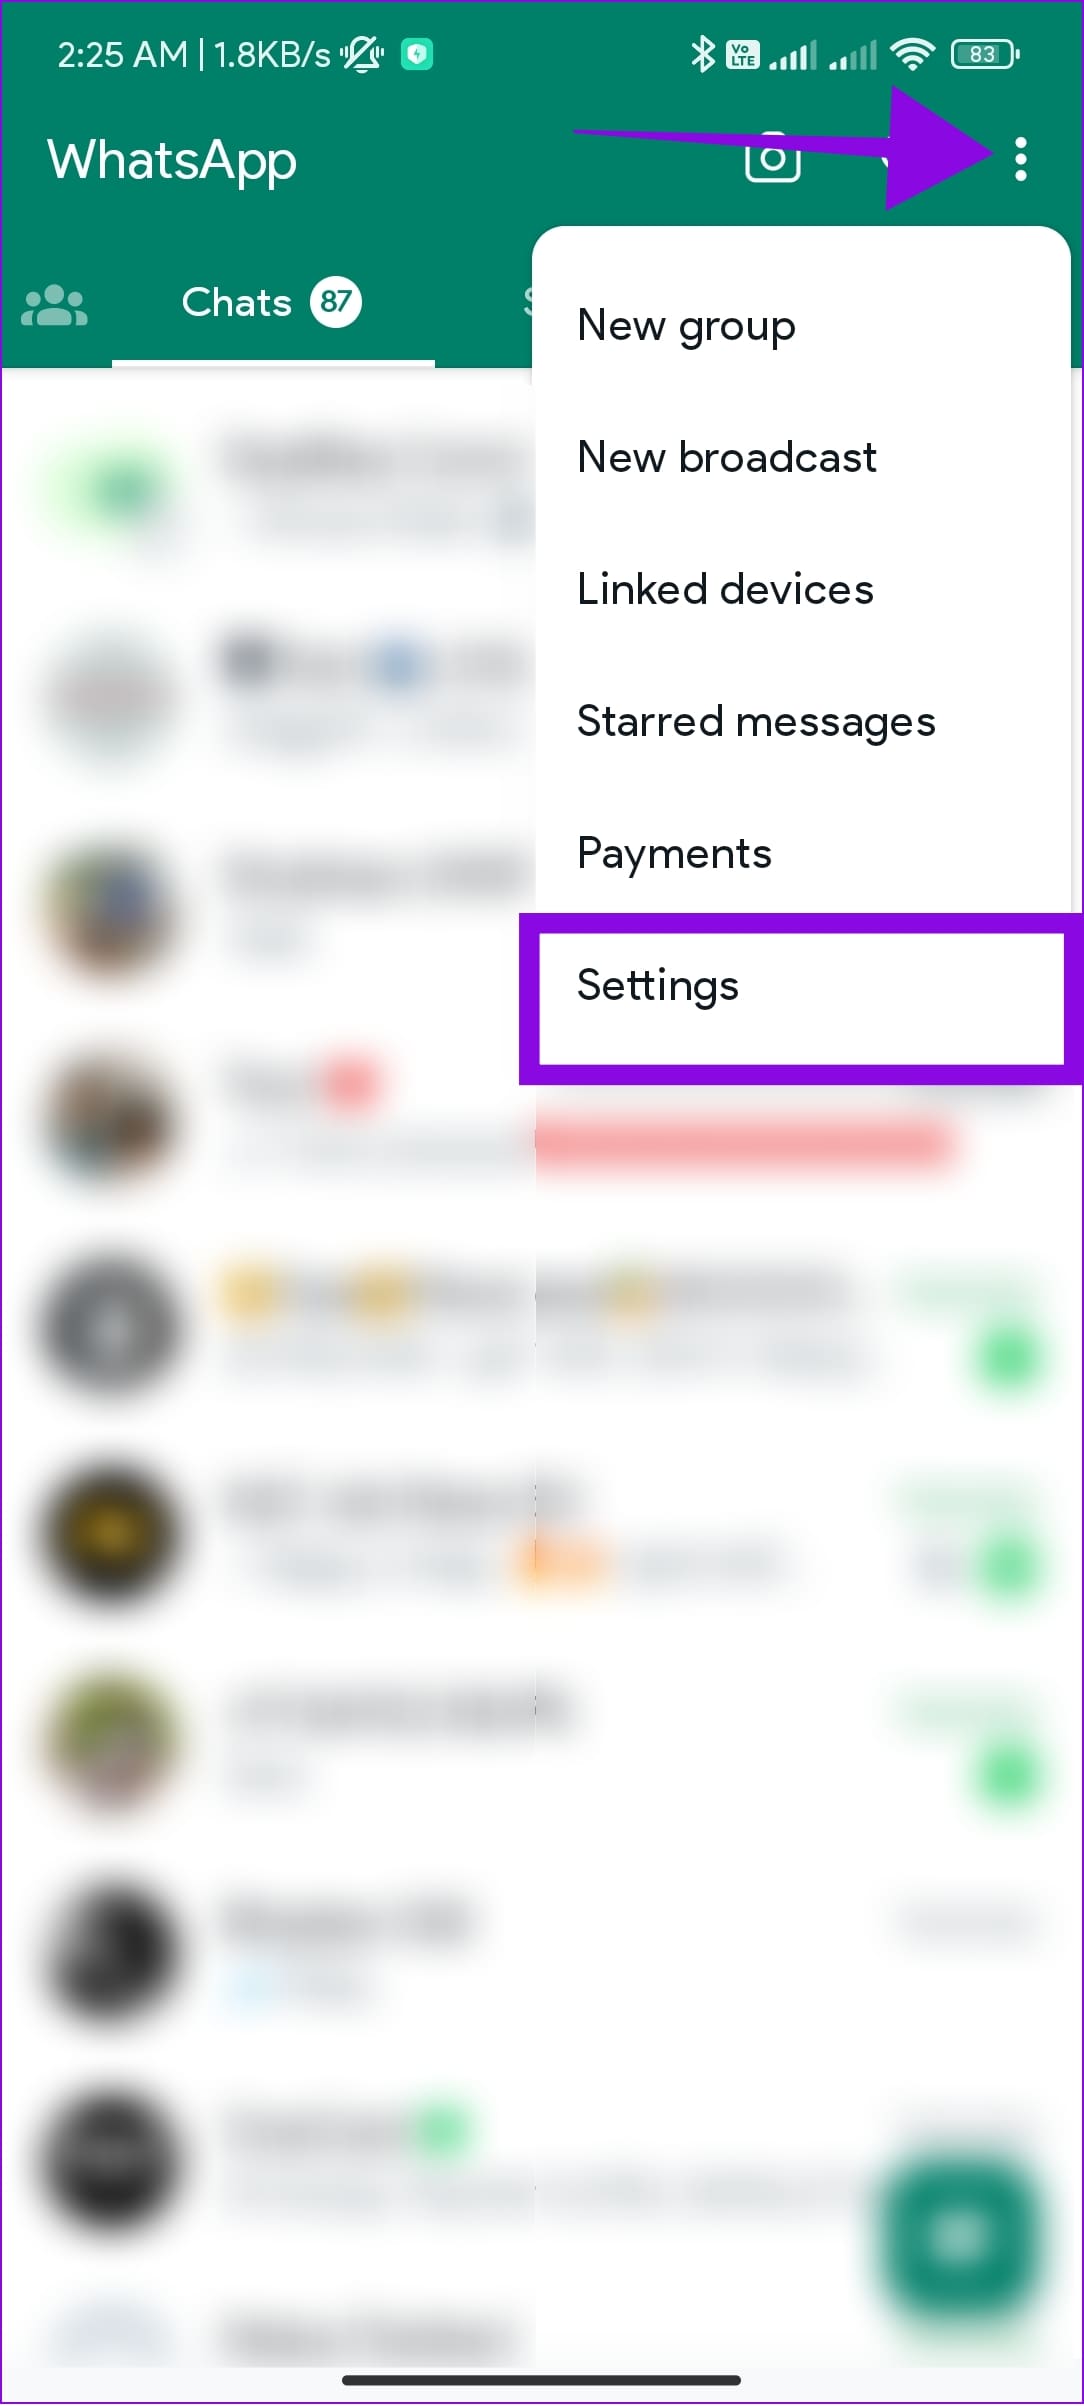 choose settings and tap settings